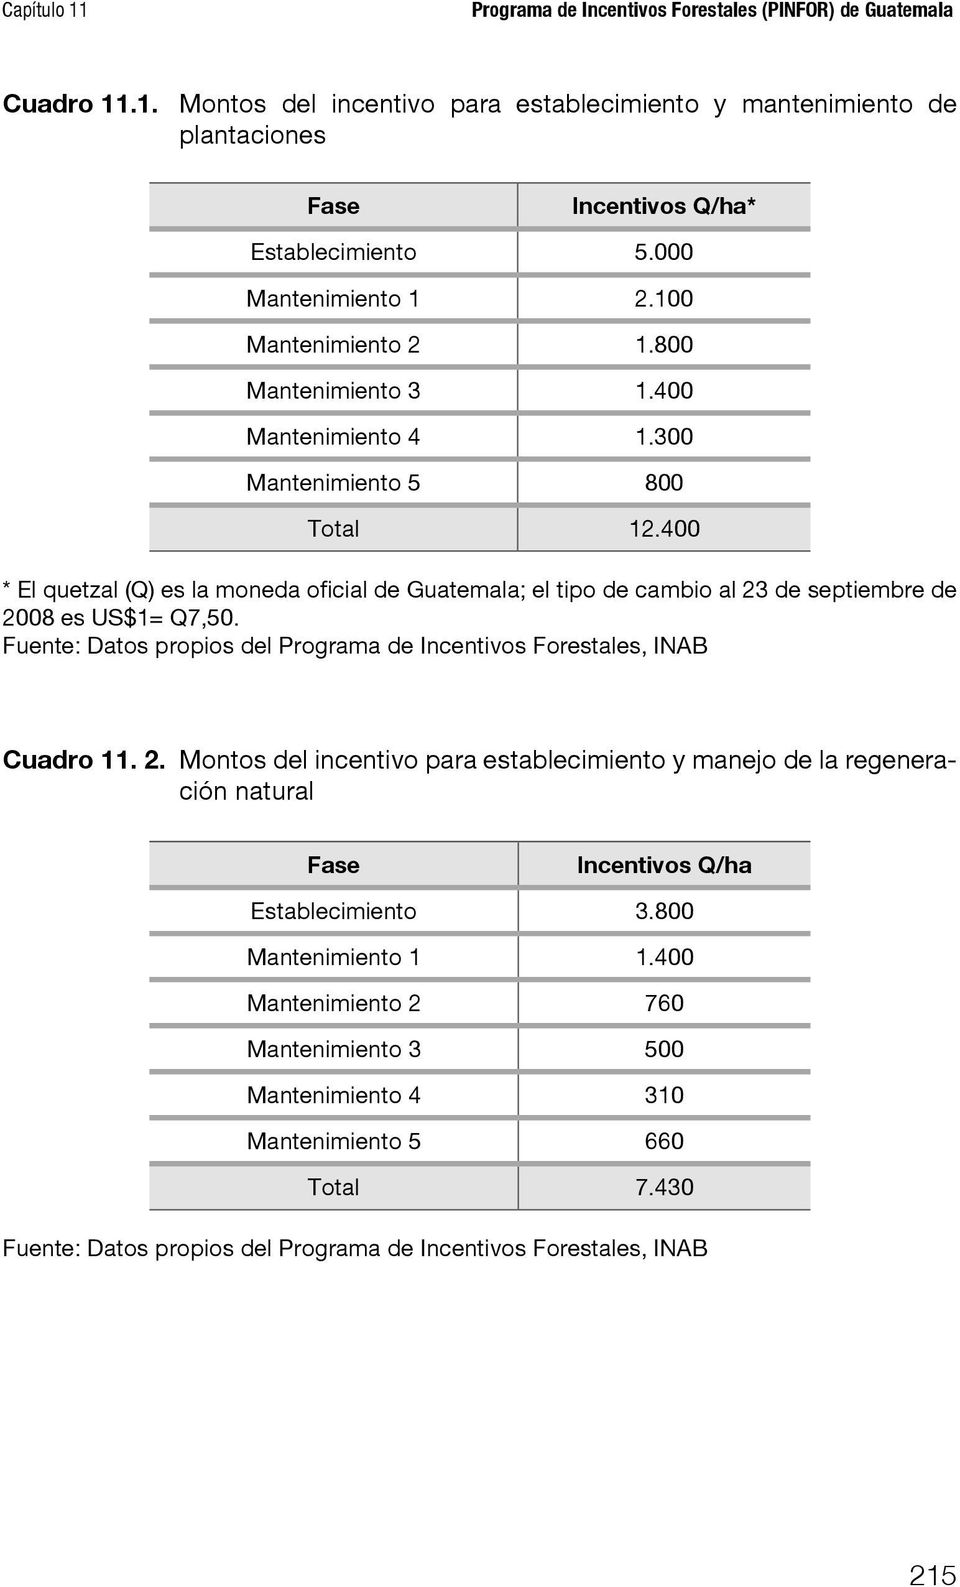 400 * El quetzal (Q) es la moneda oficial de Guatemala; el tipo de cambio al 23 de septiembre de 2008 es US$1= Q7,50. Fuente: Datos propios del Programa de Incentivos Forestales, INAB Cuadro 11. 2. Montos del incentivo para establecimiento y manejo de la regeneración natural Fase Incentivos Q/ha Establecimiento 3.